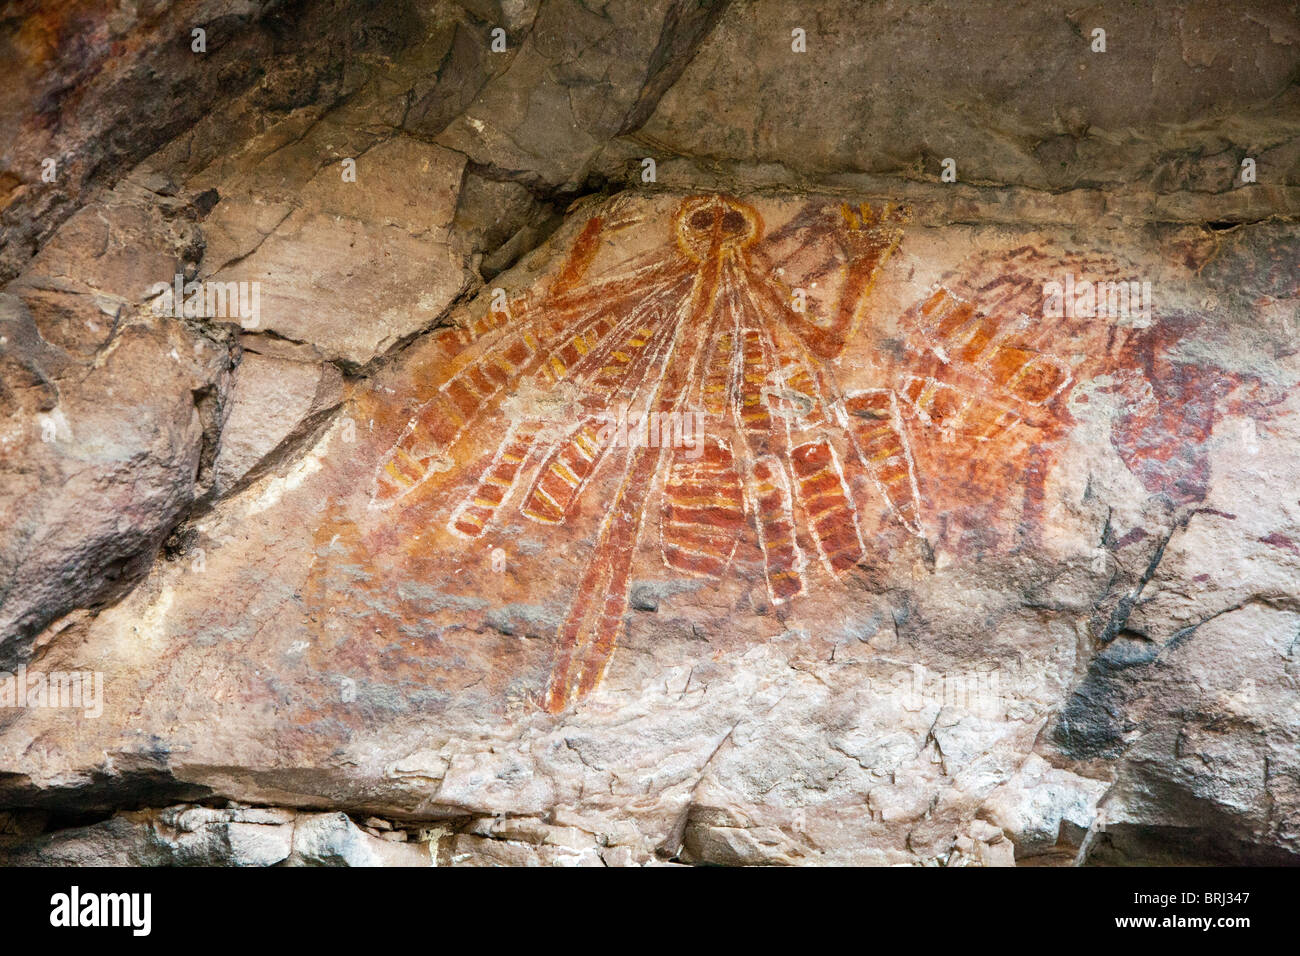 Aboriginal art in cave in Australia Stock Photo